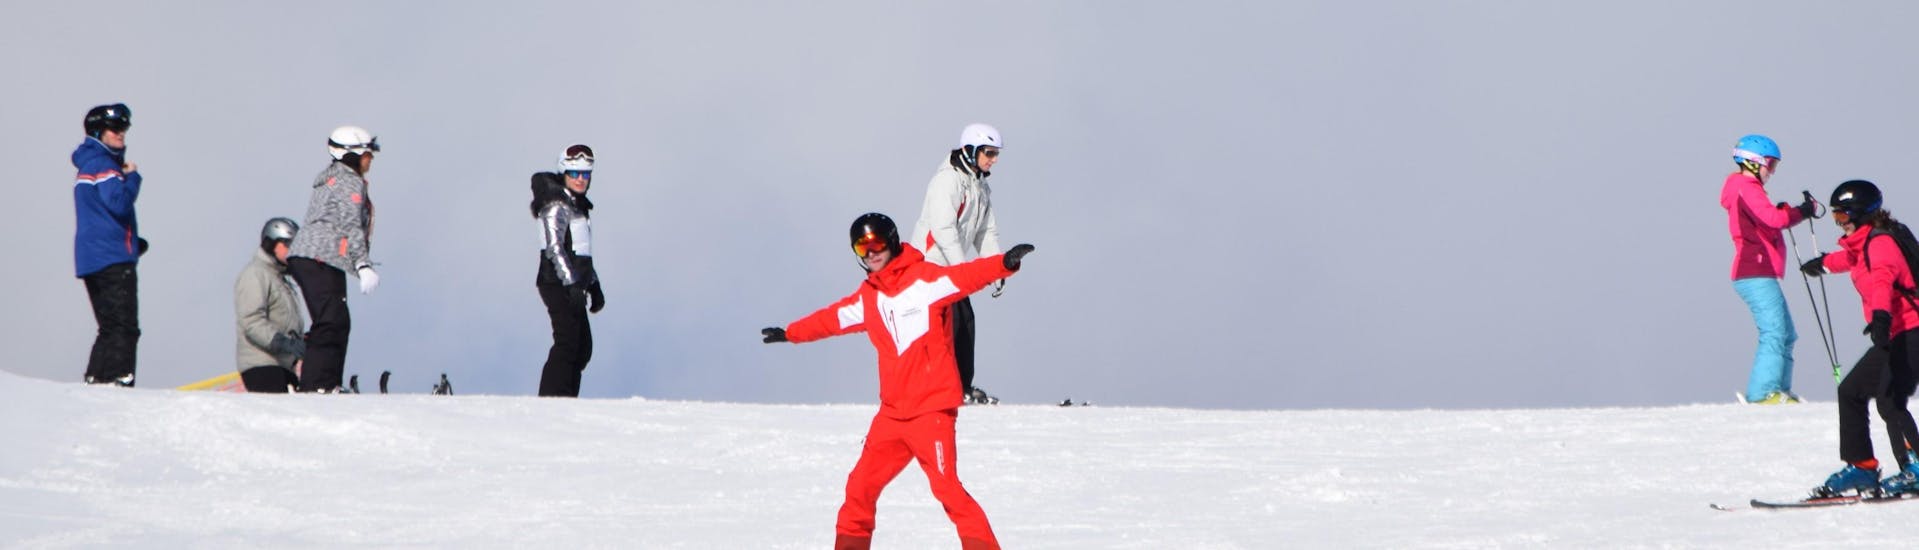 Clases de esquí para adultos a partir de 15 años para avanzados con Ski School Snowsports Westendorf.